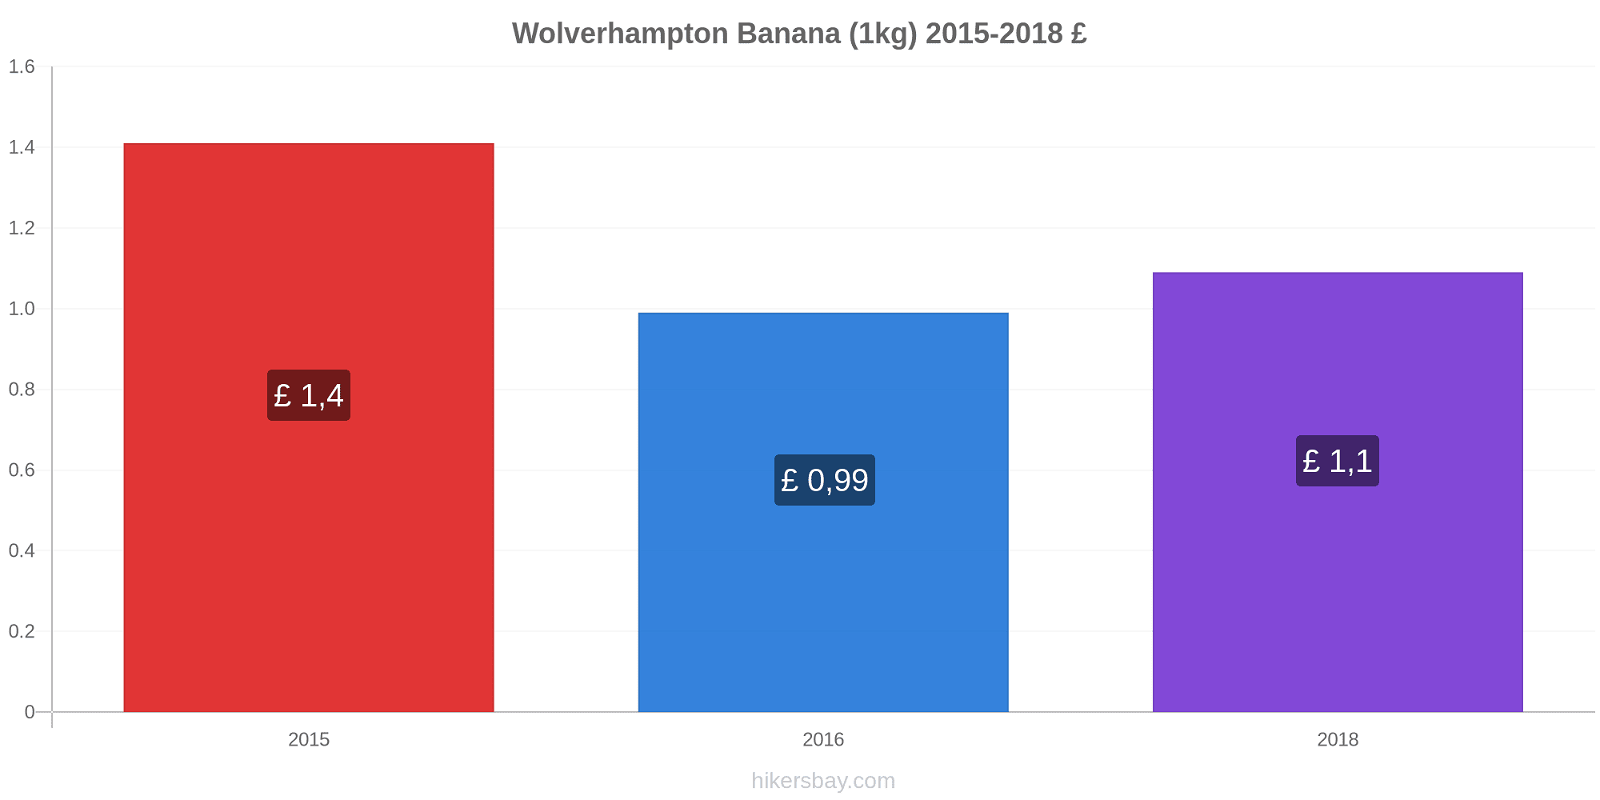 Wolverhampton variação de preço Banana (1kg) hikersbay.com